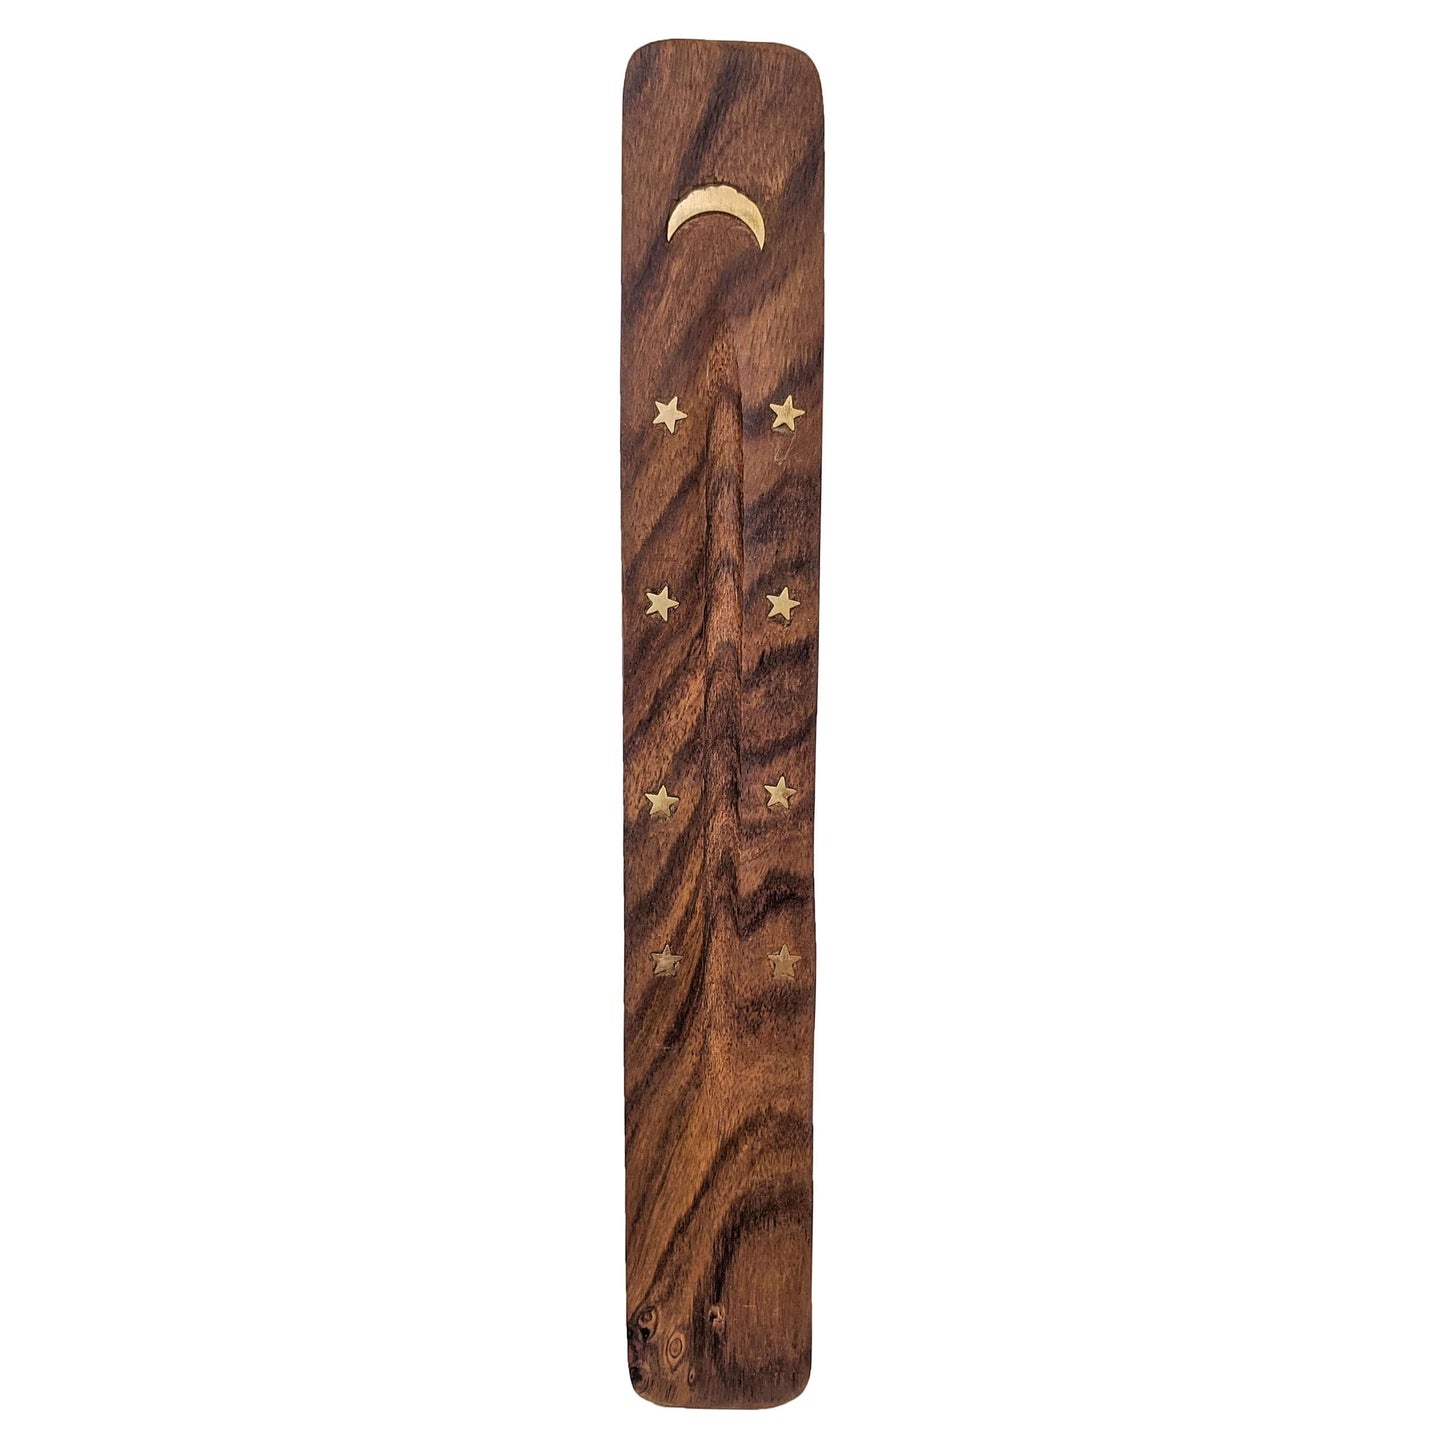 10" Wood Incense Burner & Ash Catcher, Moon Design